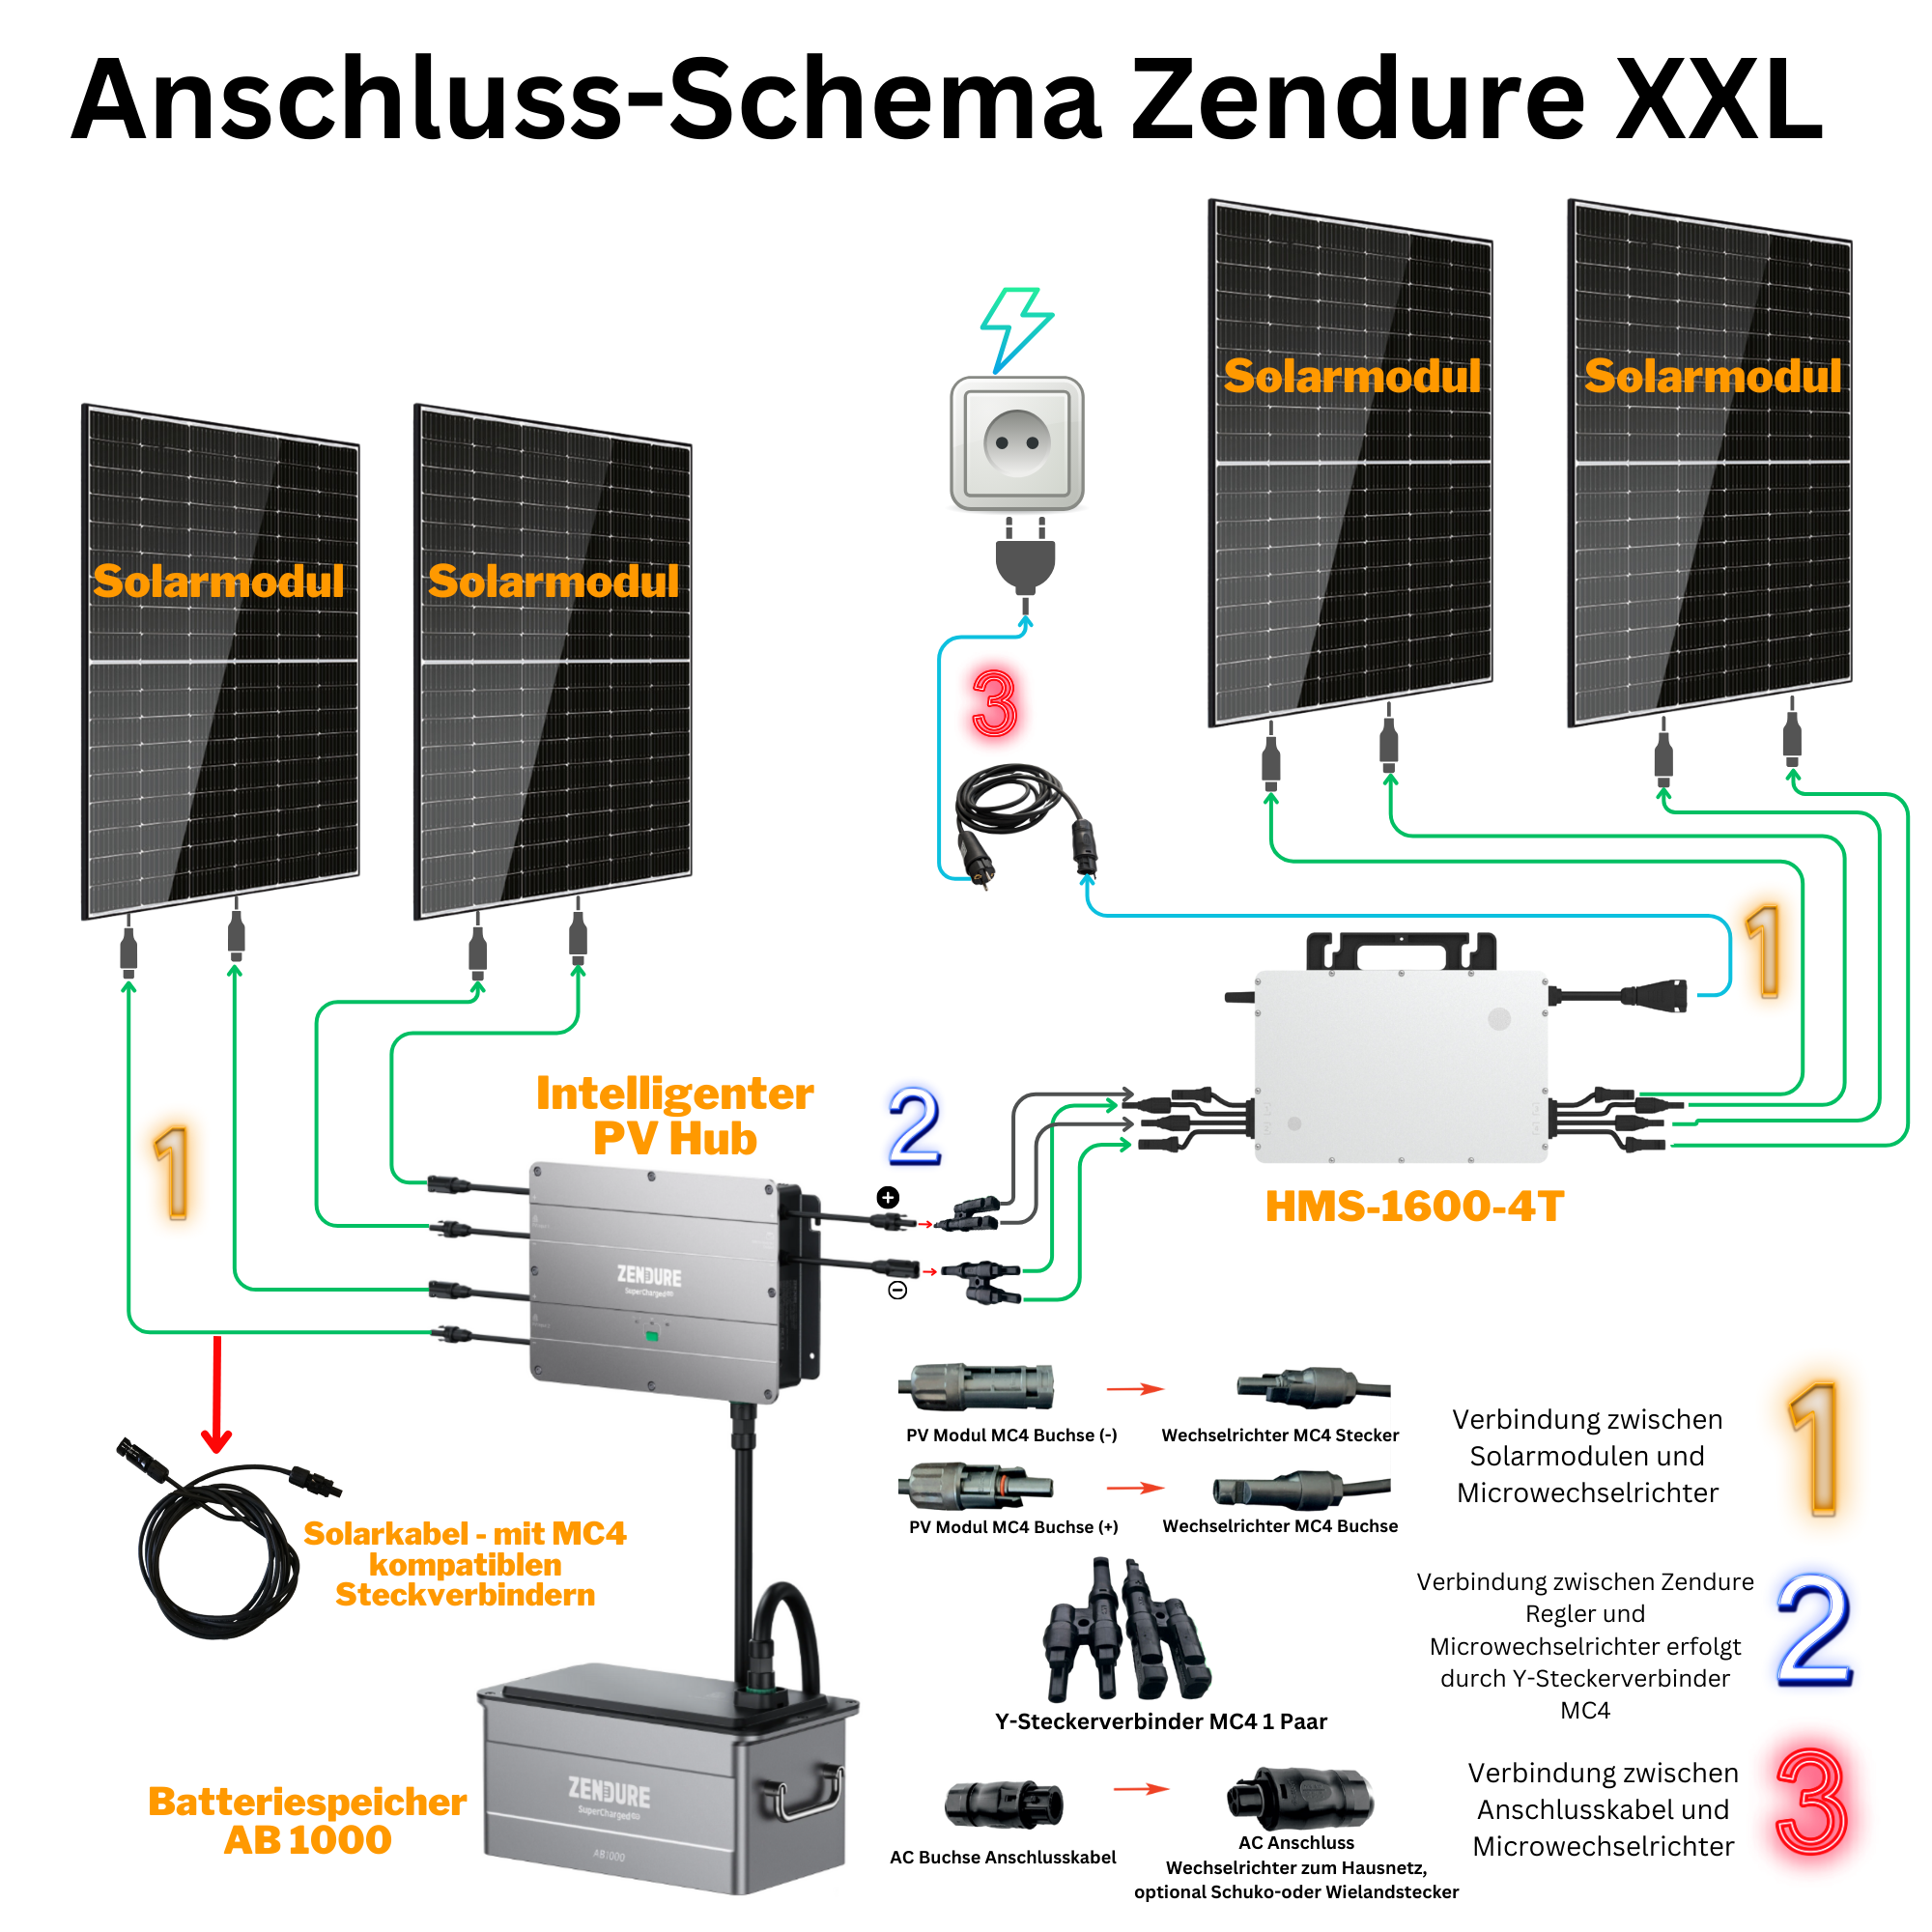 Anschluss-Schema Zendure XXL